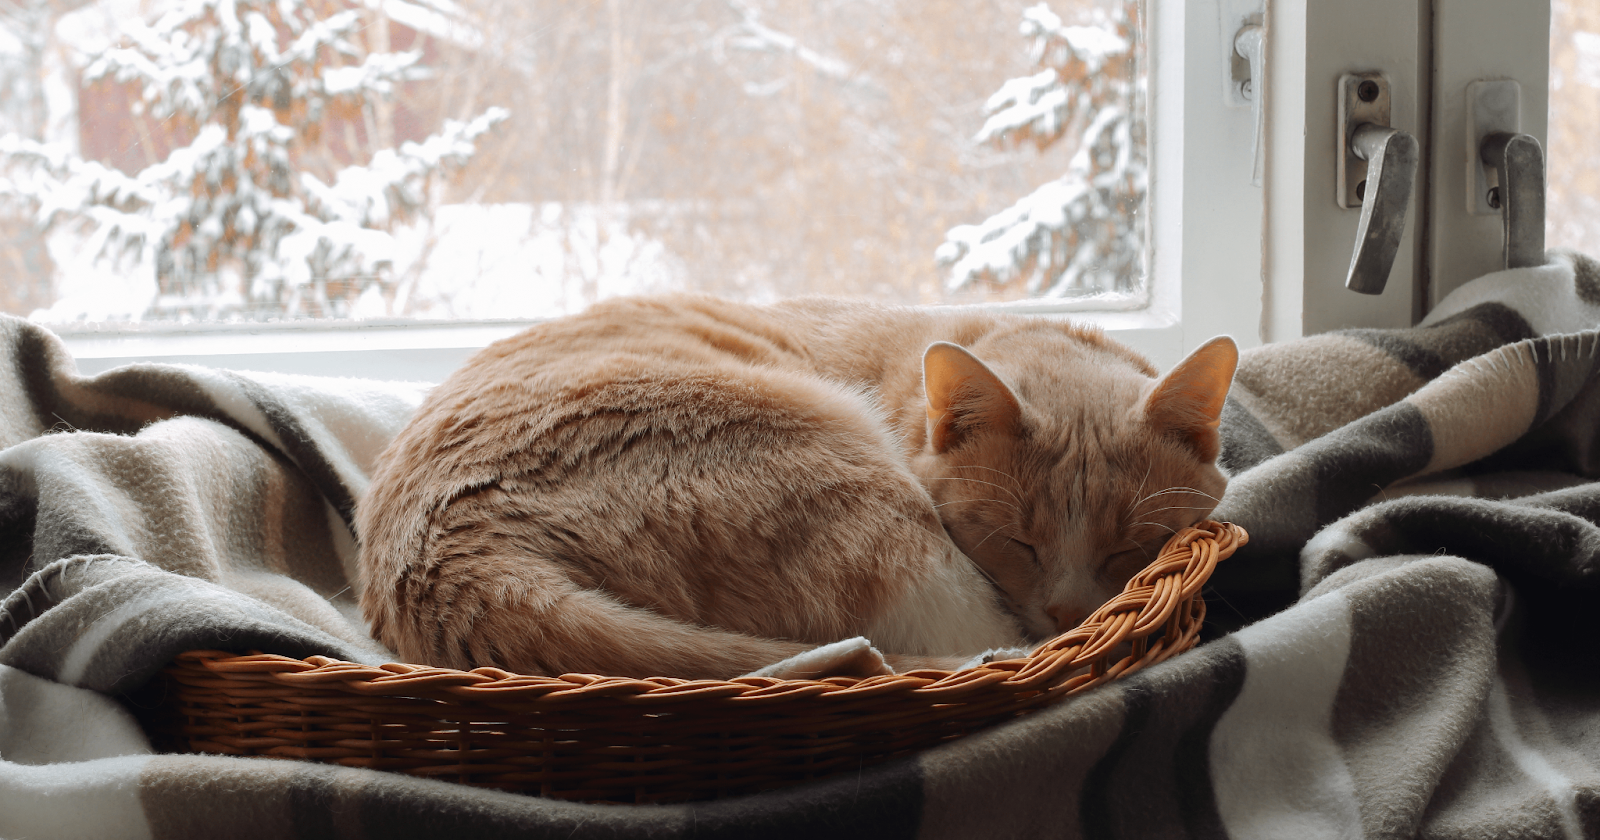 Katt sover i sin korg framför fönstret. Utomhus är det vinterväder.